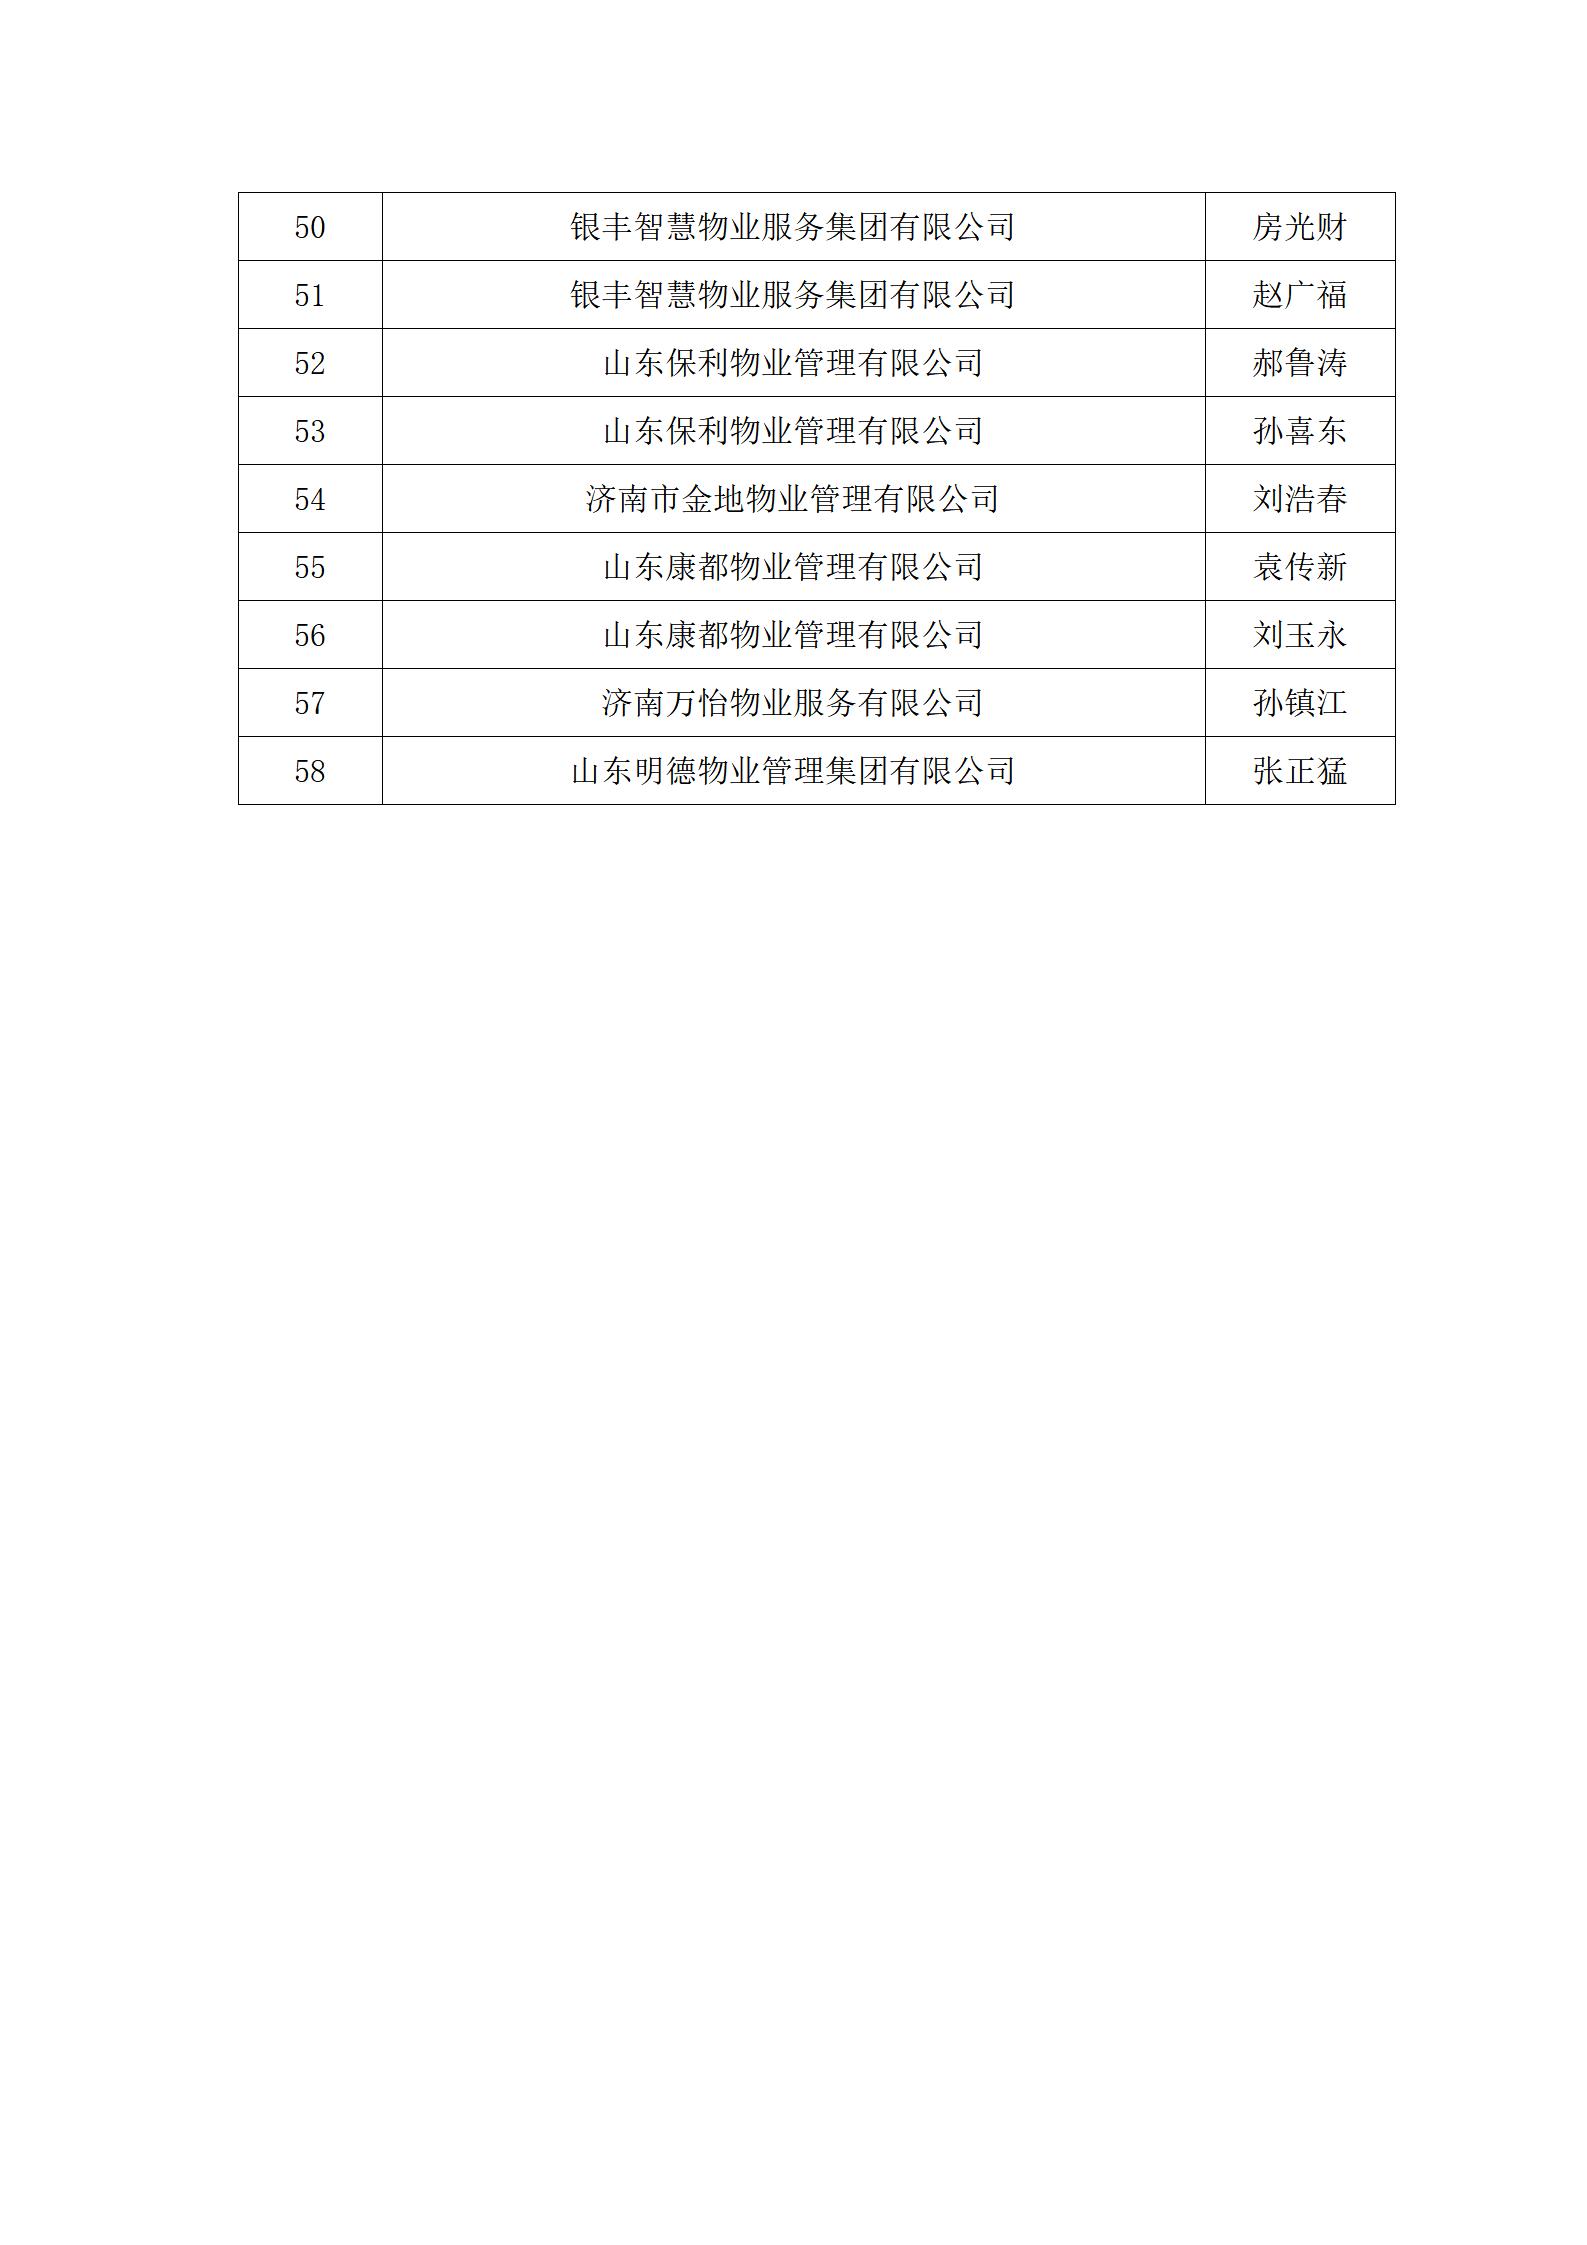 关于“明德杯”第六届济南市物业服务行业职业技能竞赛选手名单的公示_10